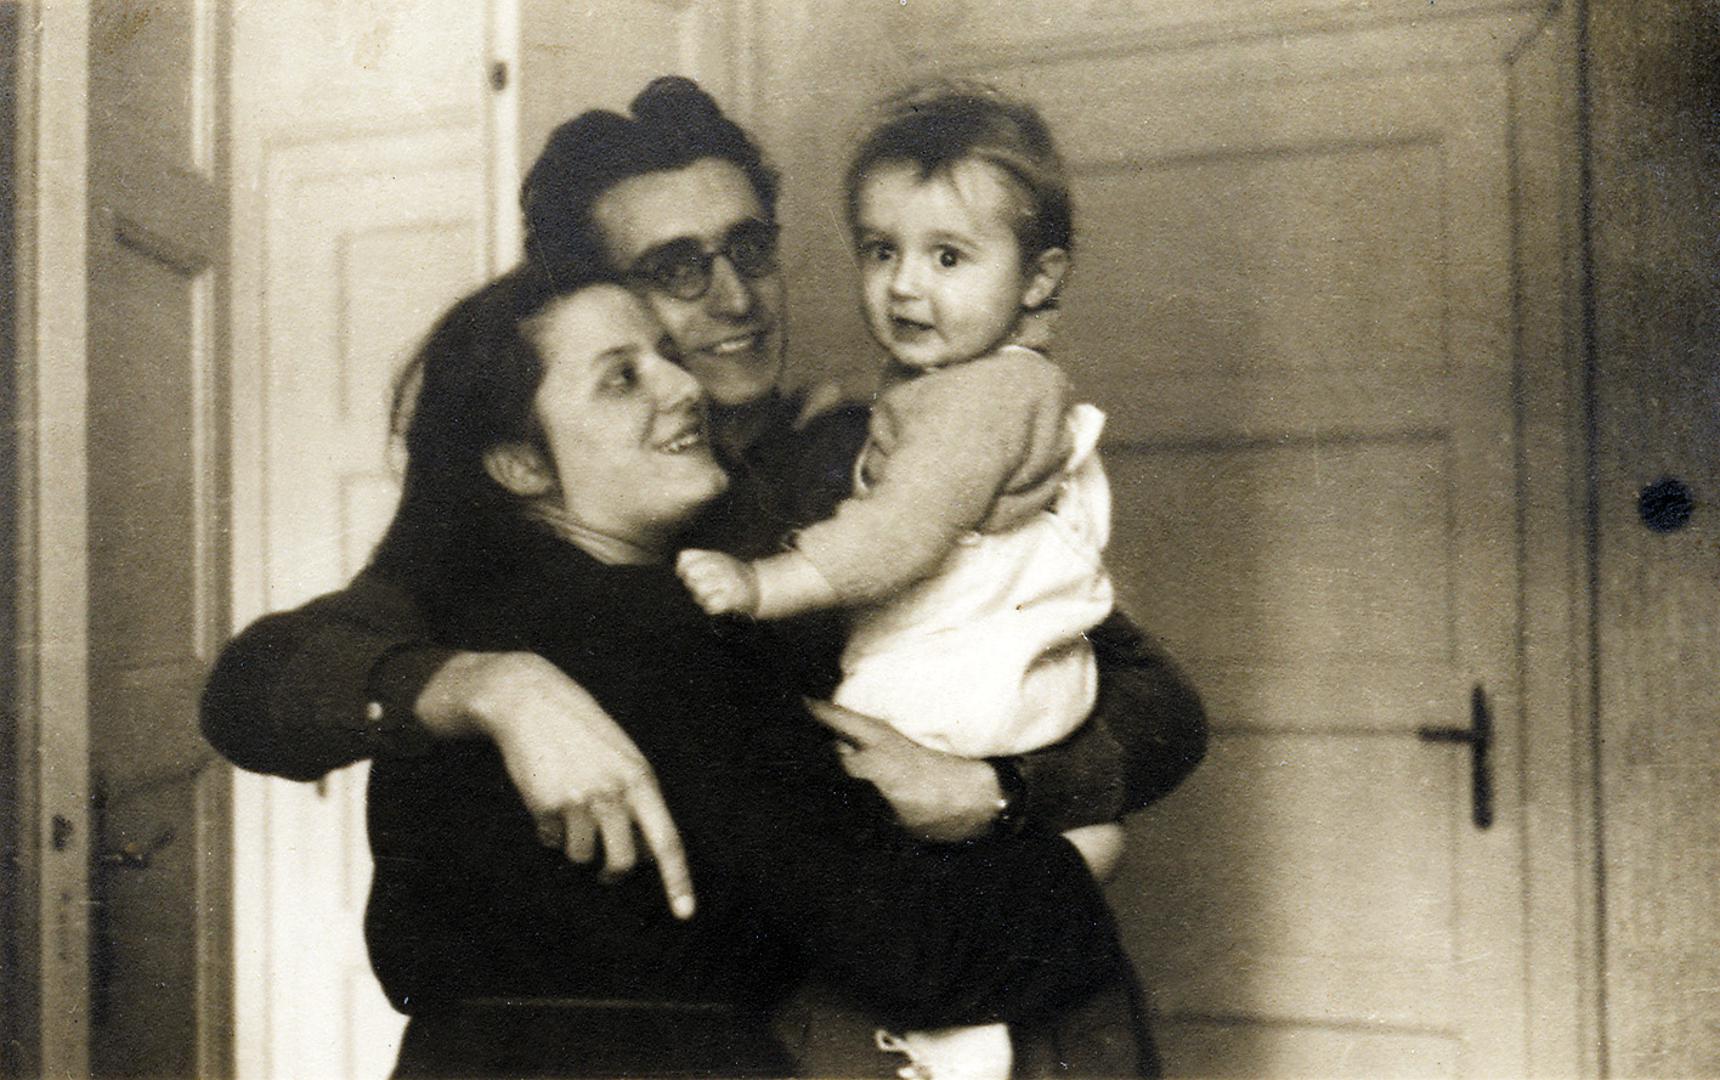 travanj 1947. – mladi bračni par Tuđman u Beogradu s prvim djetetom, sinom Miroslavom koji se rodio 25. svibnja 1946., točno godinu dana poslije vjenčanja svojih roditelja, a ime je dobio po Krleži